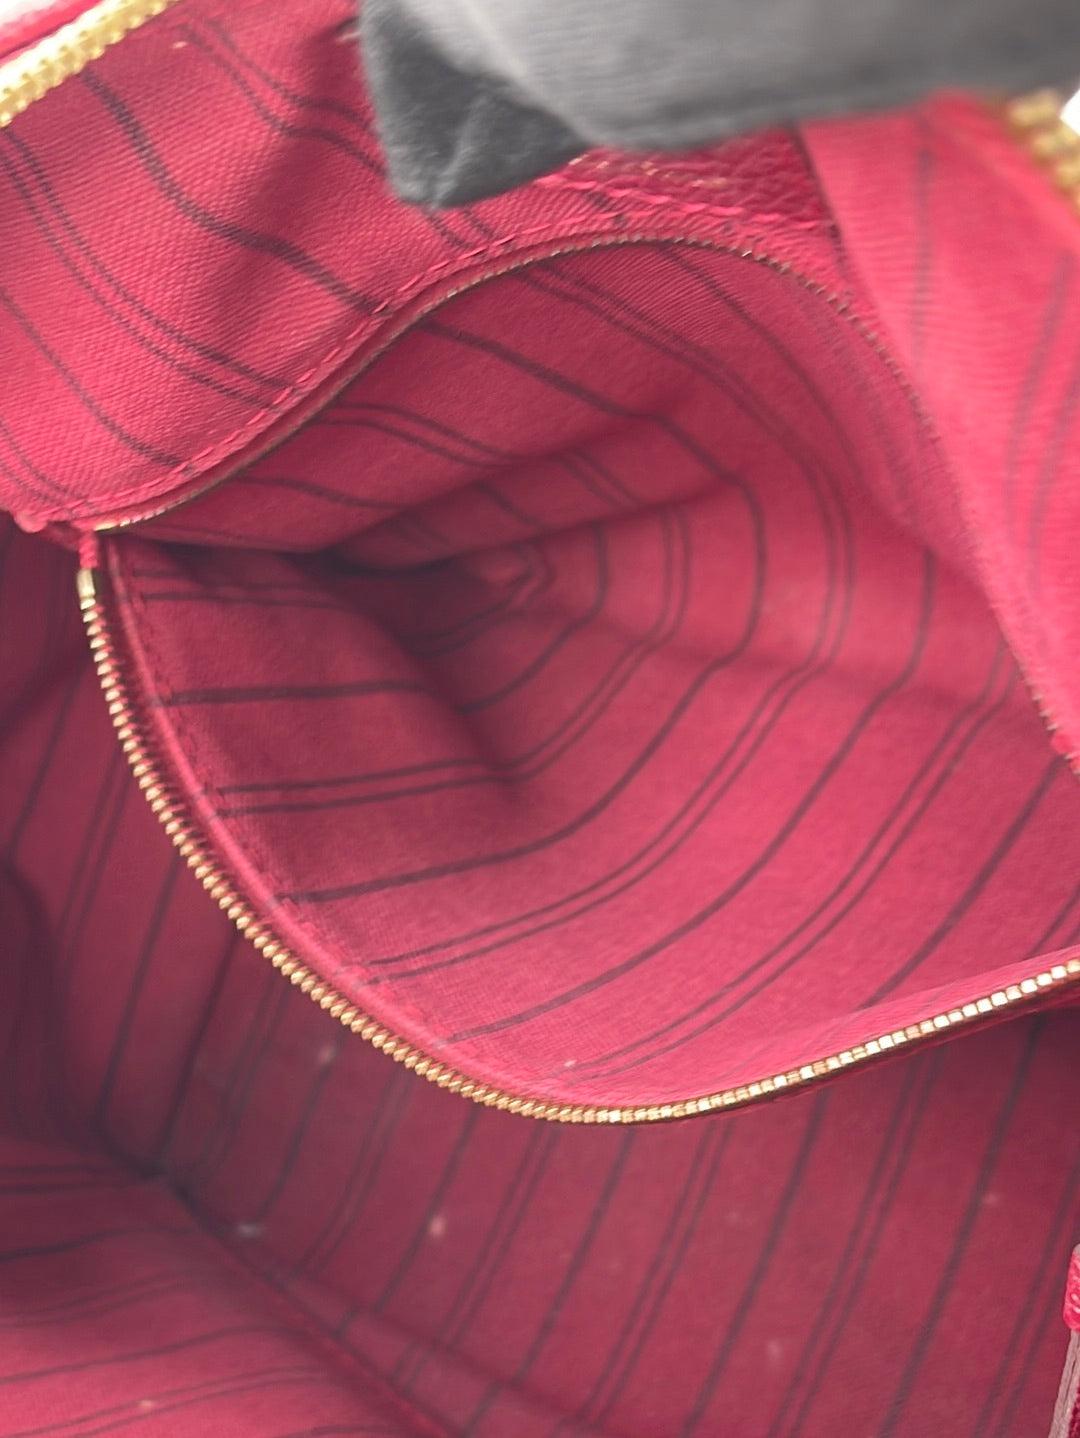 PRELOVED Louis Vuitton Speedy 25 Red Empriente Leather Bandolier Bag SP2103 051823